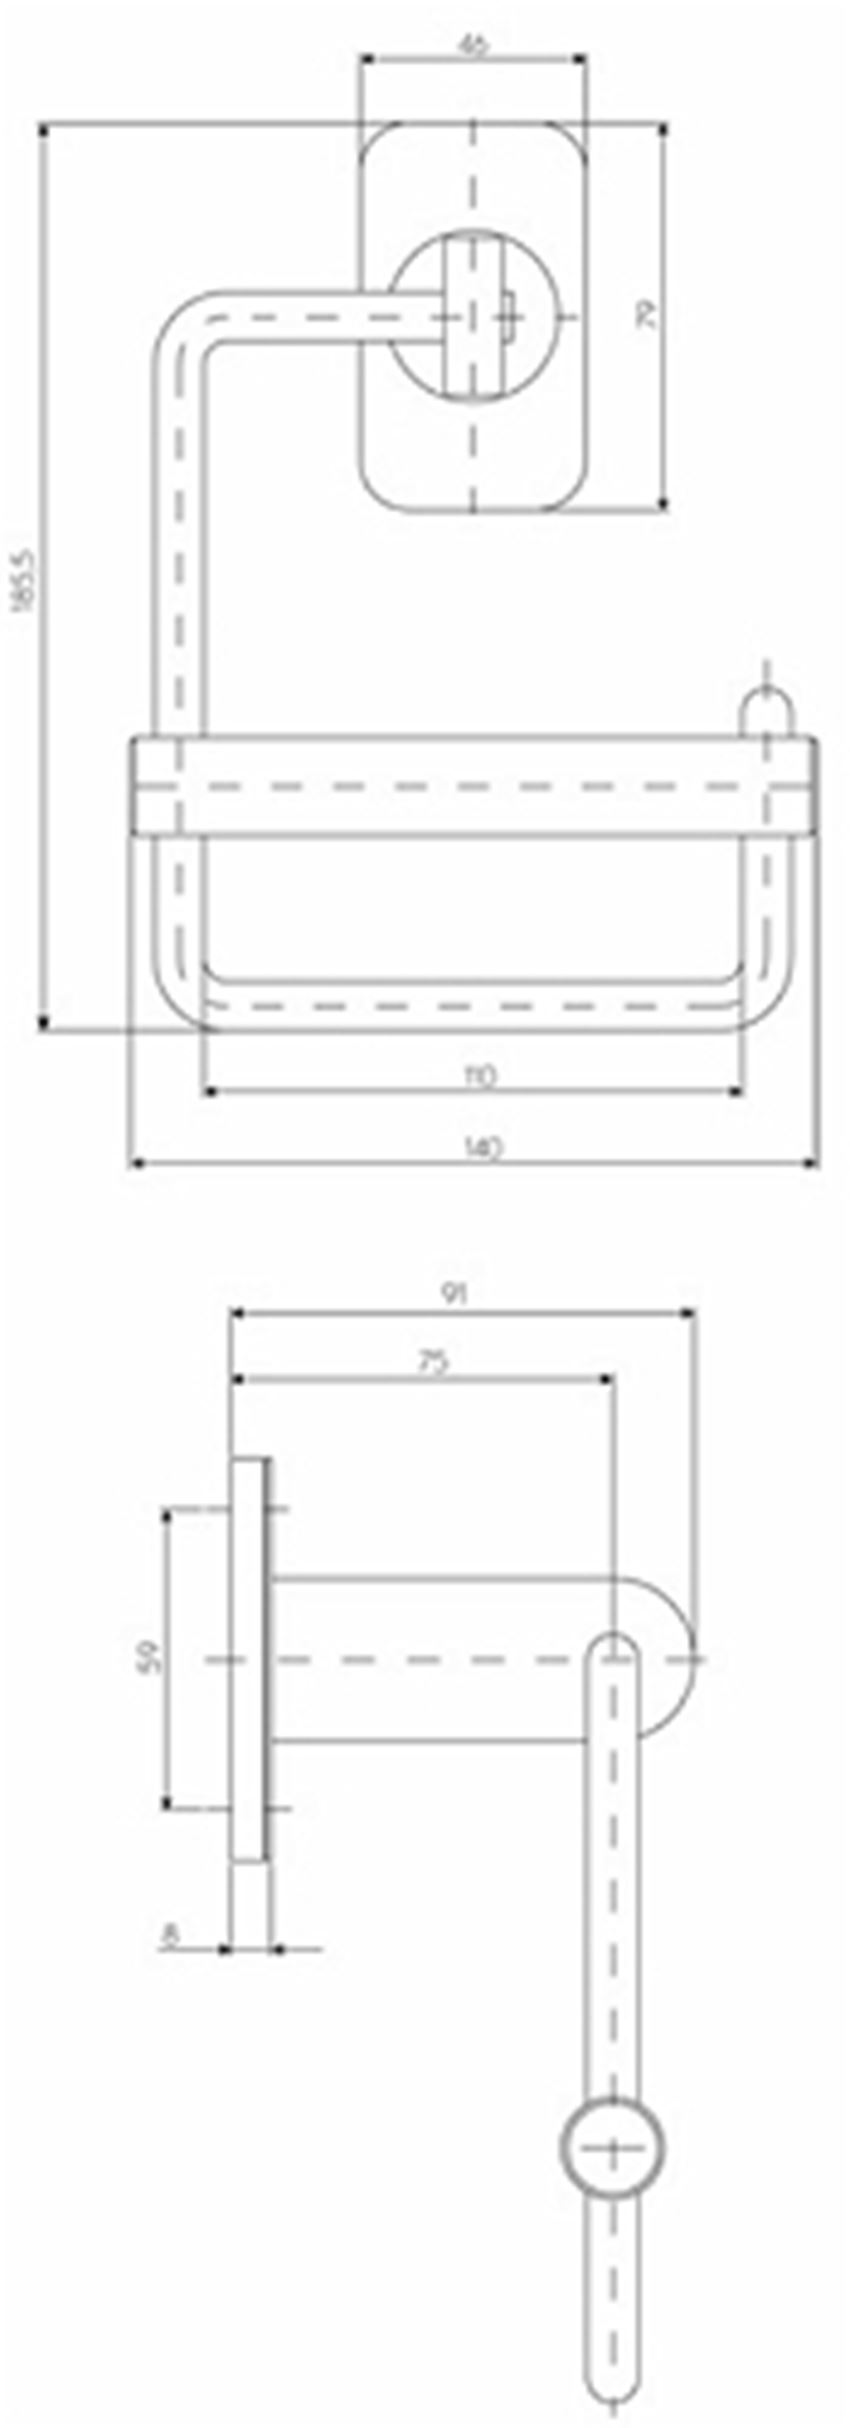 Uchwyt papieru toaletowego Koło Lehnen Evolution rysunek techniczny